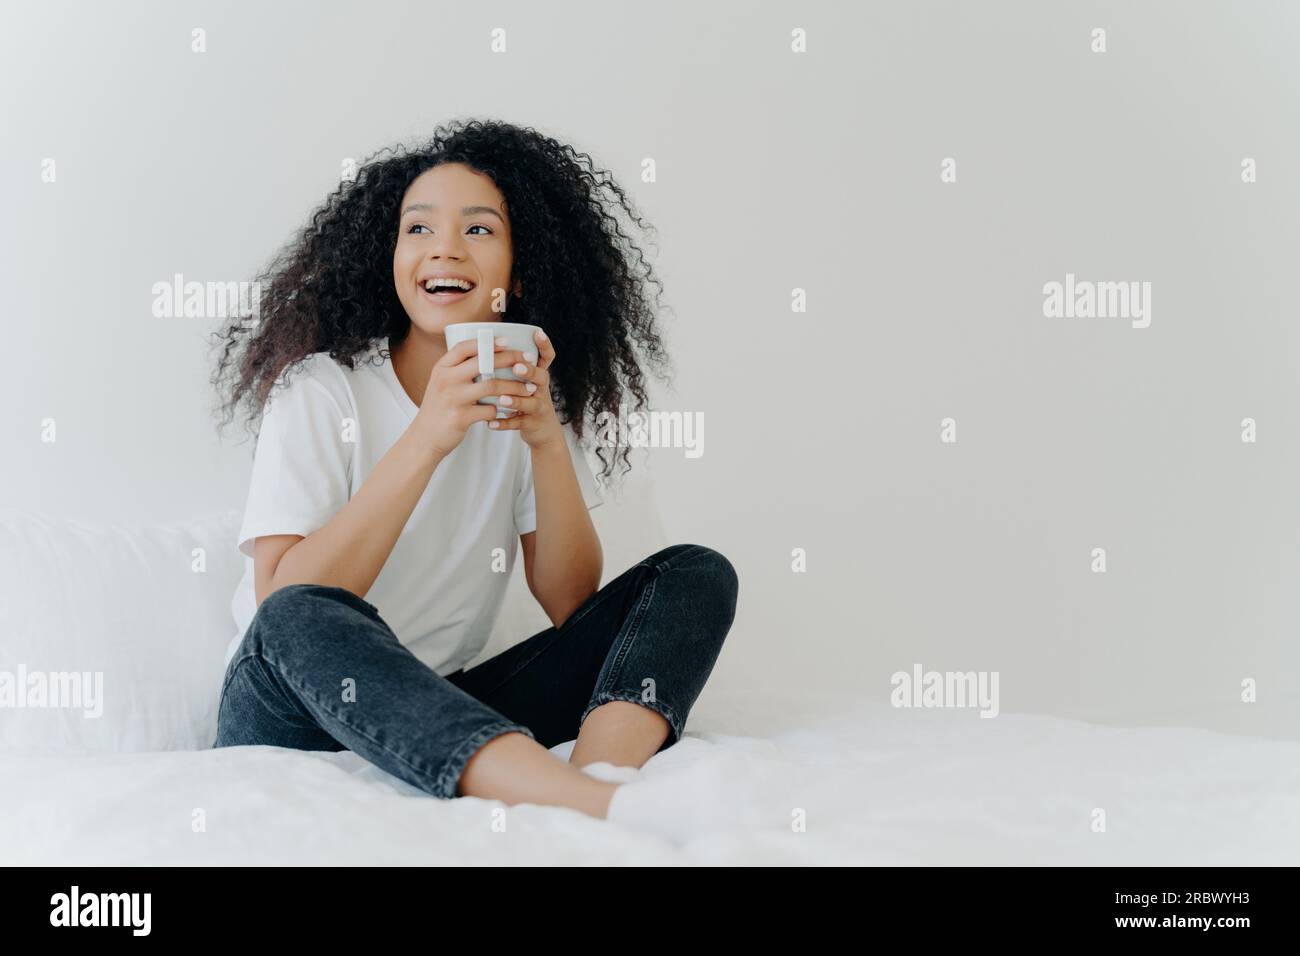 Afro Woman's gemütlicher Morgen: Trinkt ein heißes Getränk im Bett, Blick auf den Inhalt, bequeme Kleidung, sonniges Wetter, weiße Wand. Stockfoto